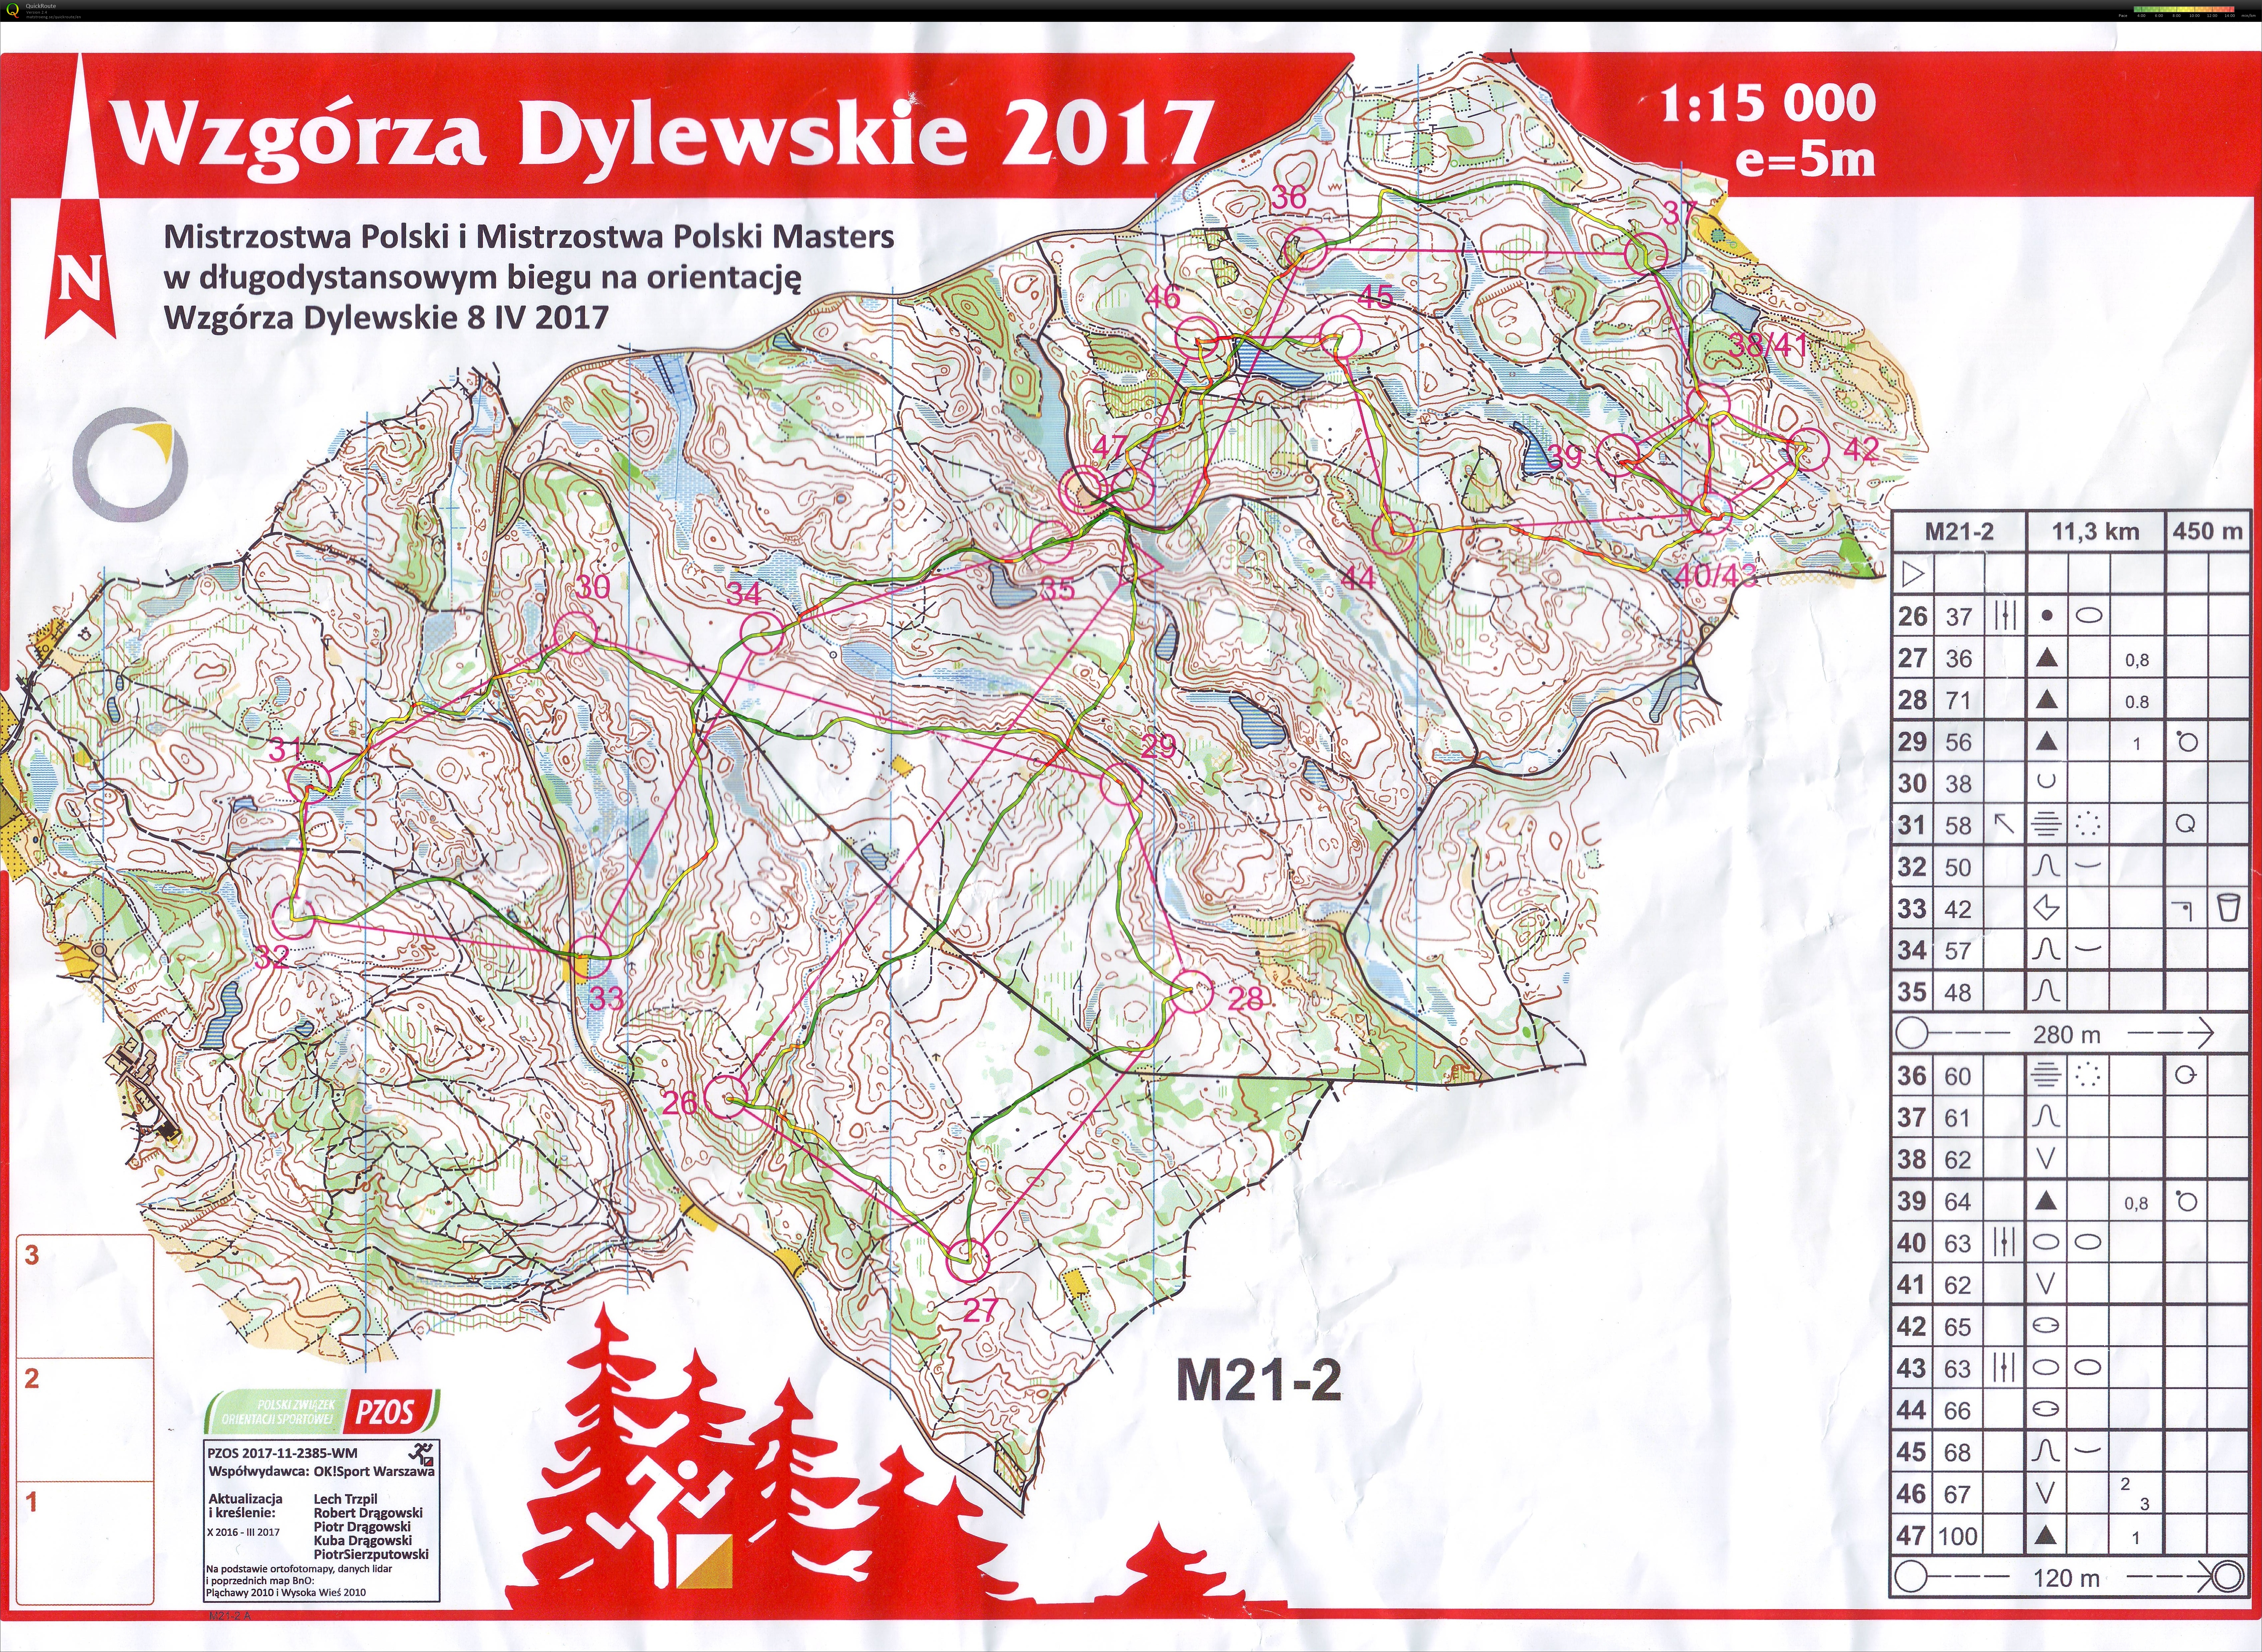 Z483 - Mistrzostwa Polski Long  2017 (08/04/2017)